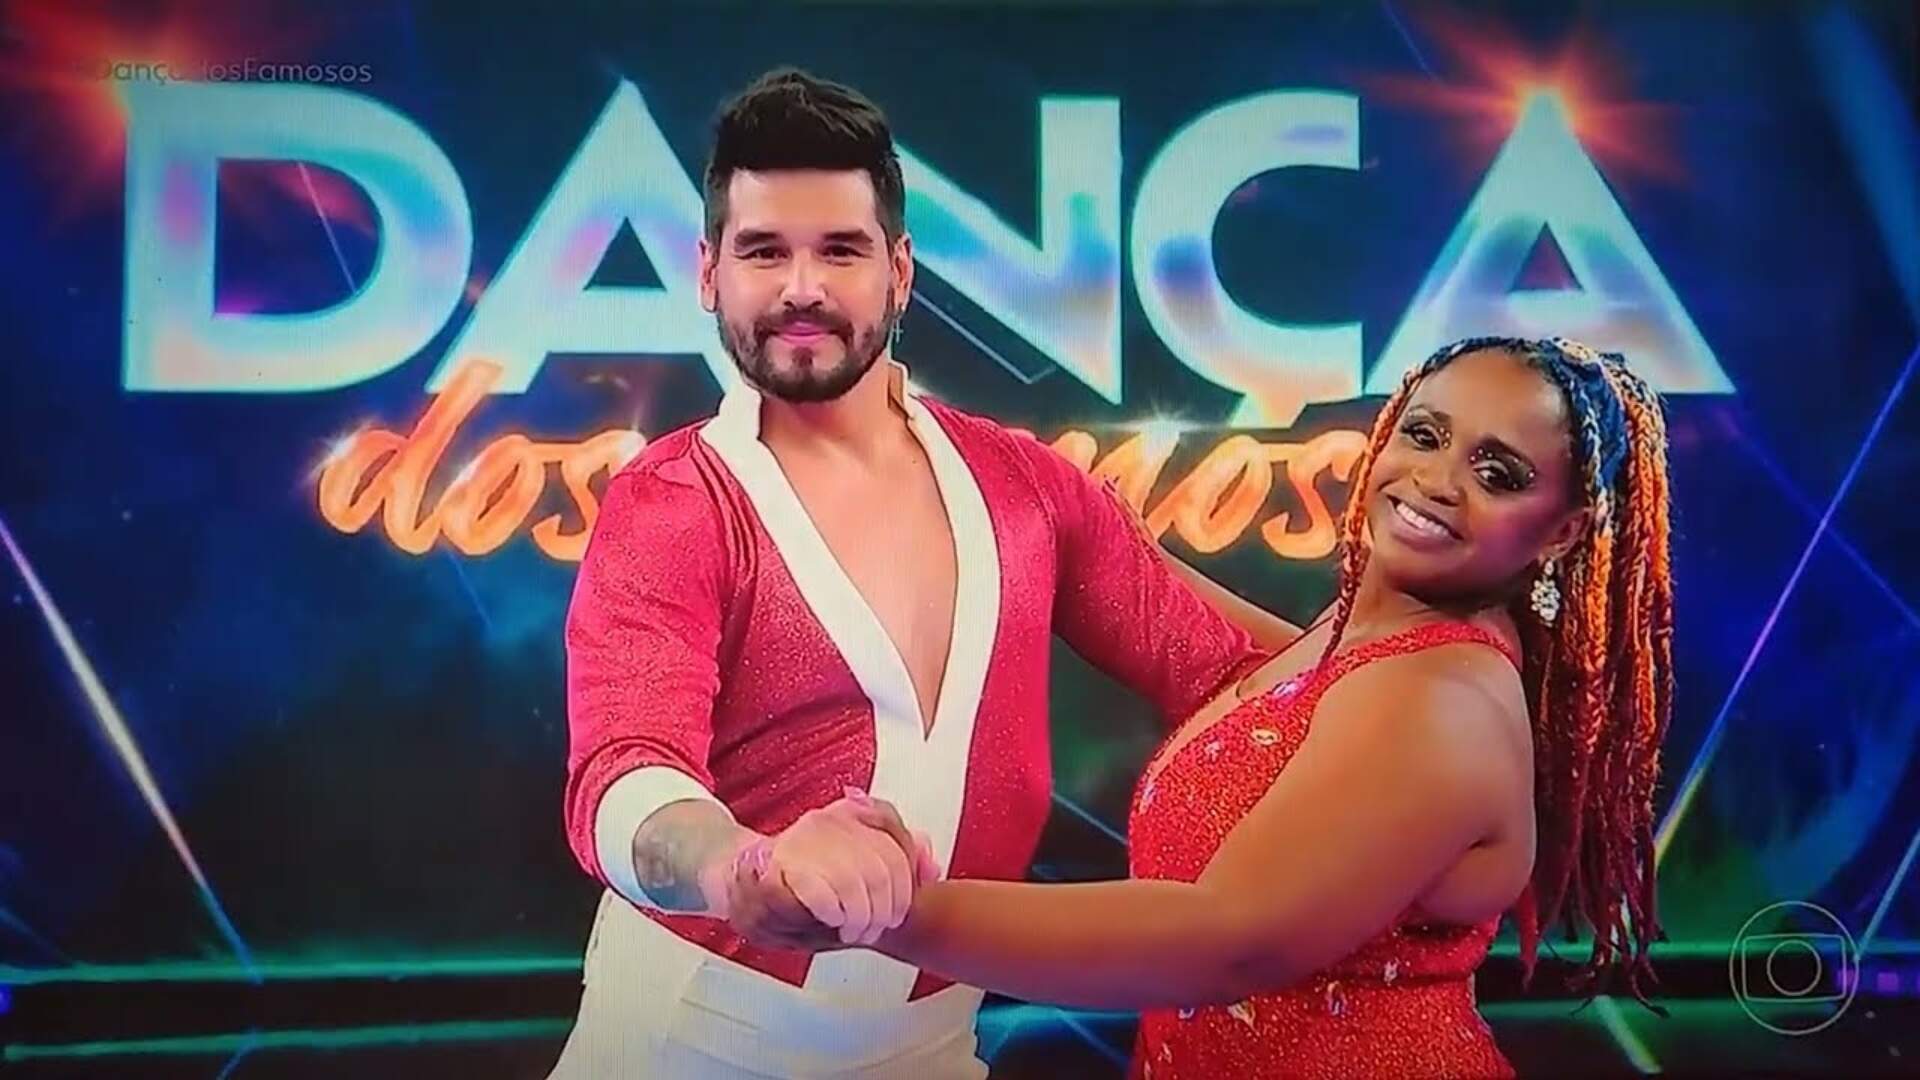 Eliminada, Daiane dos Santos fala sobre a experiência do “Dança dos Famosos”